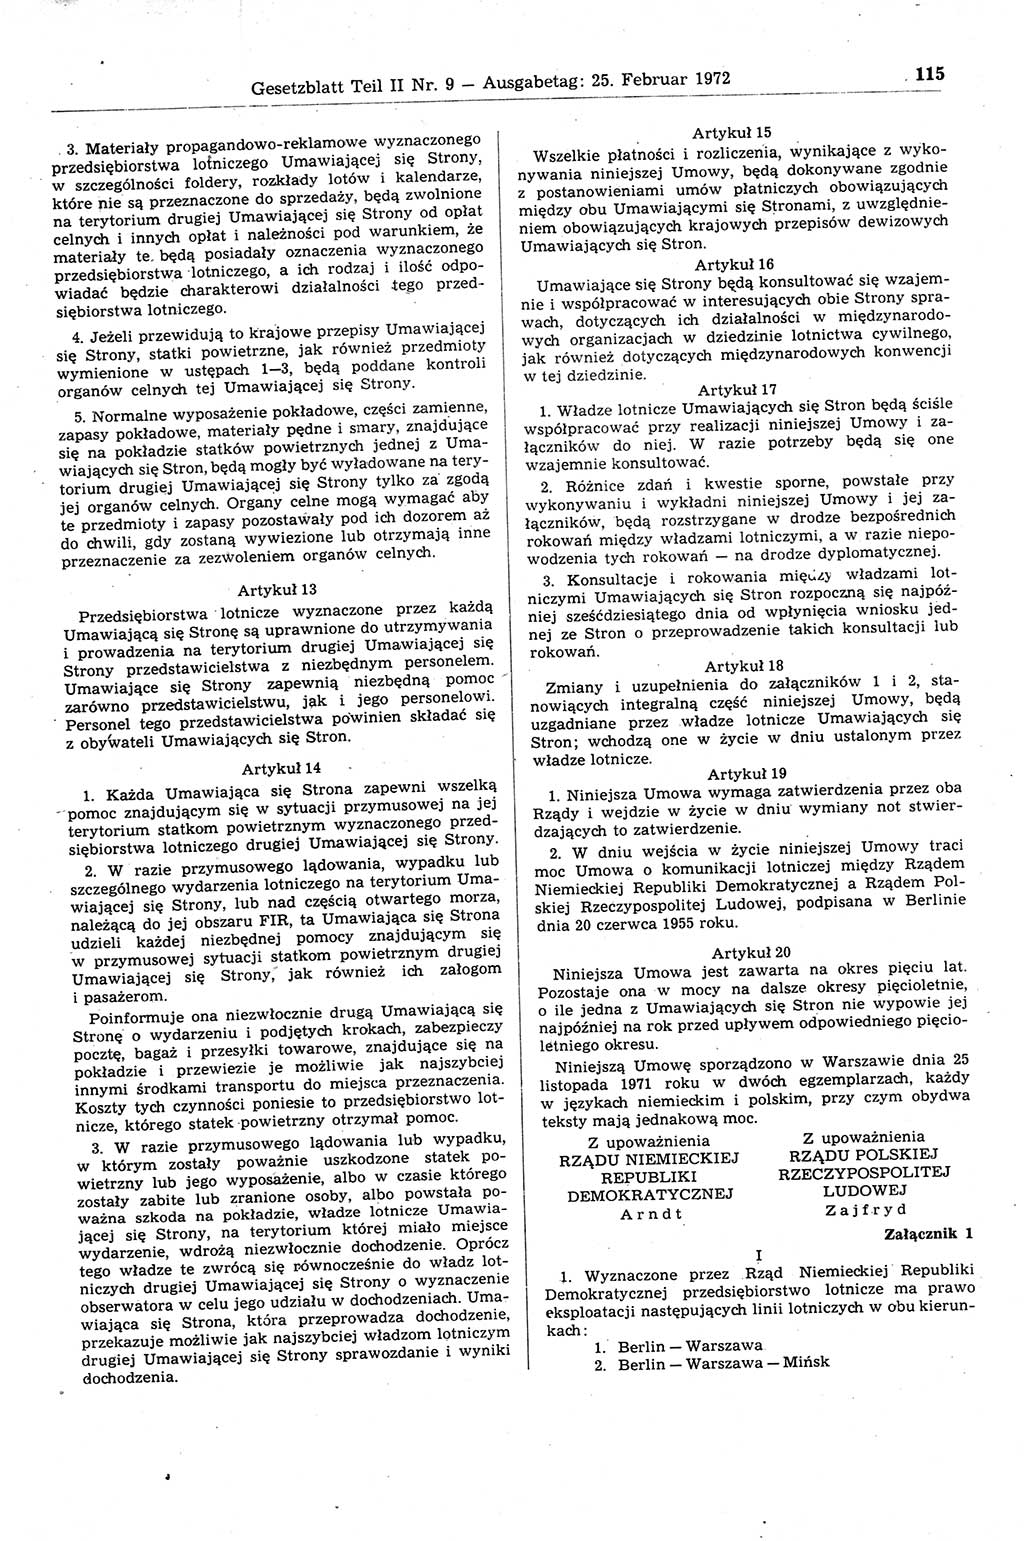 Gesetzblatt (GBl.) der Deutschen Demokratischen Republik (DDR) Teil ⅠⅠ 1972, Seite 115 (GBl. DDR ⅠⅠ 1972, S. 115)